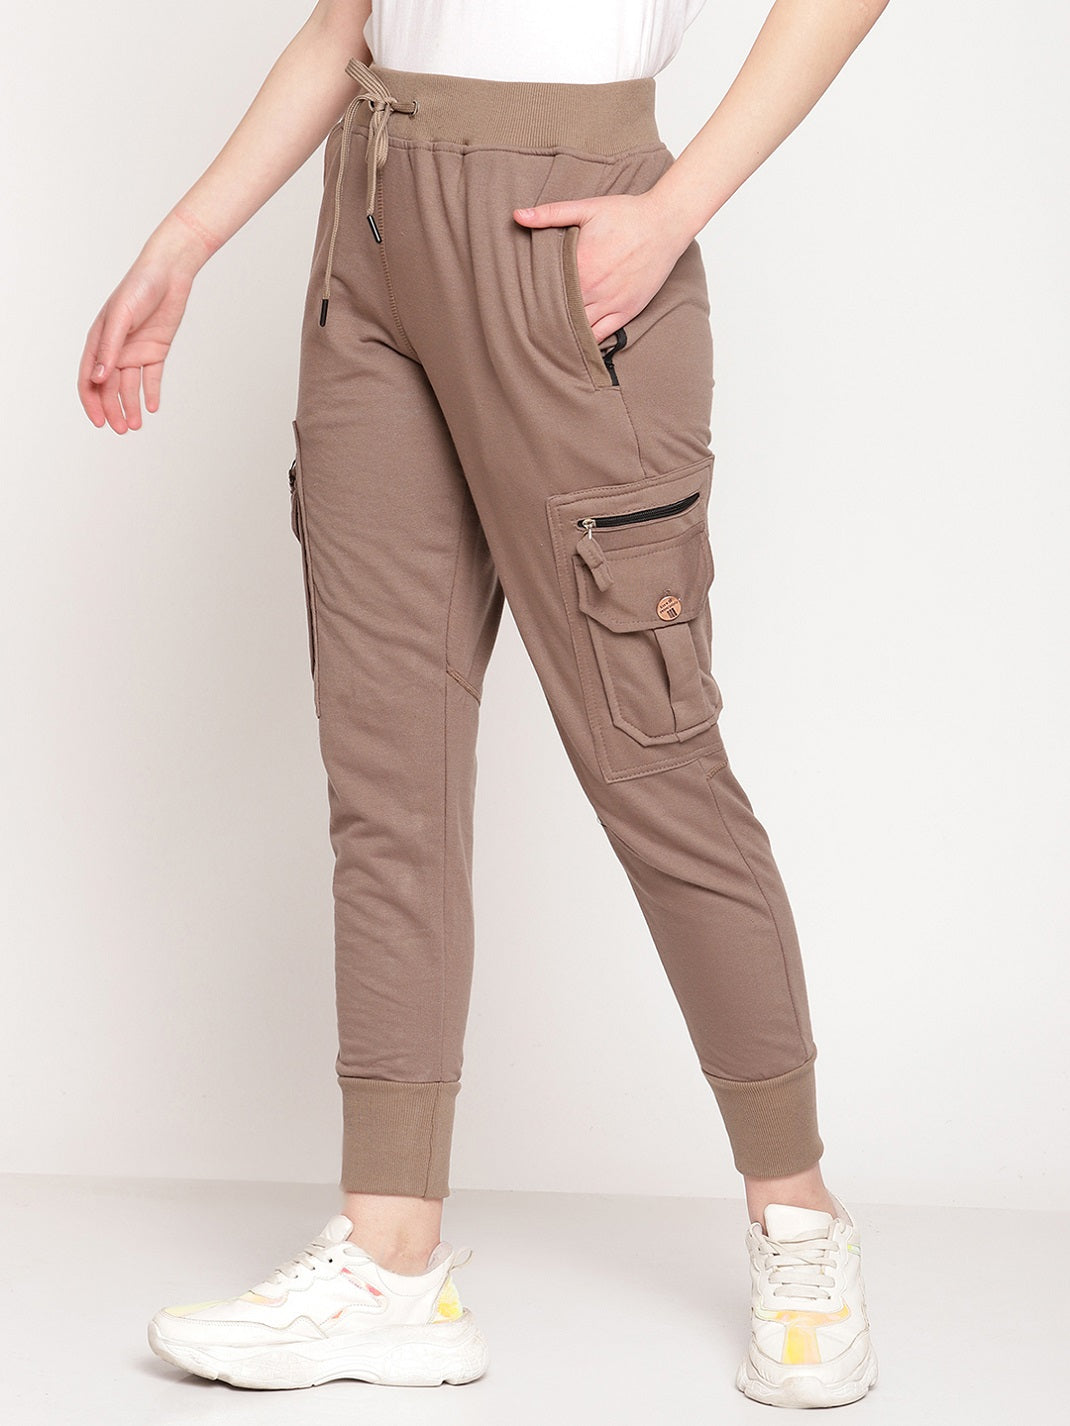 Amazon.in: Hubberholme - Track Pants / Sportswear: Clothing & Accessories